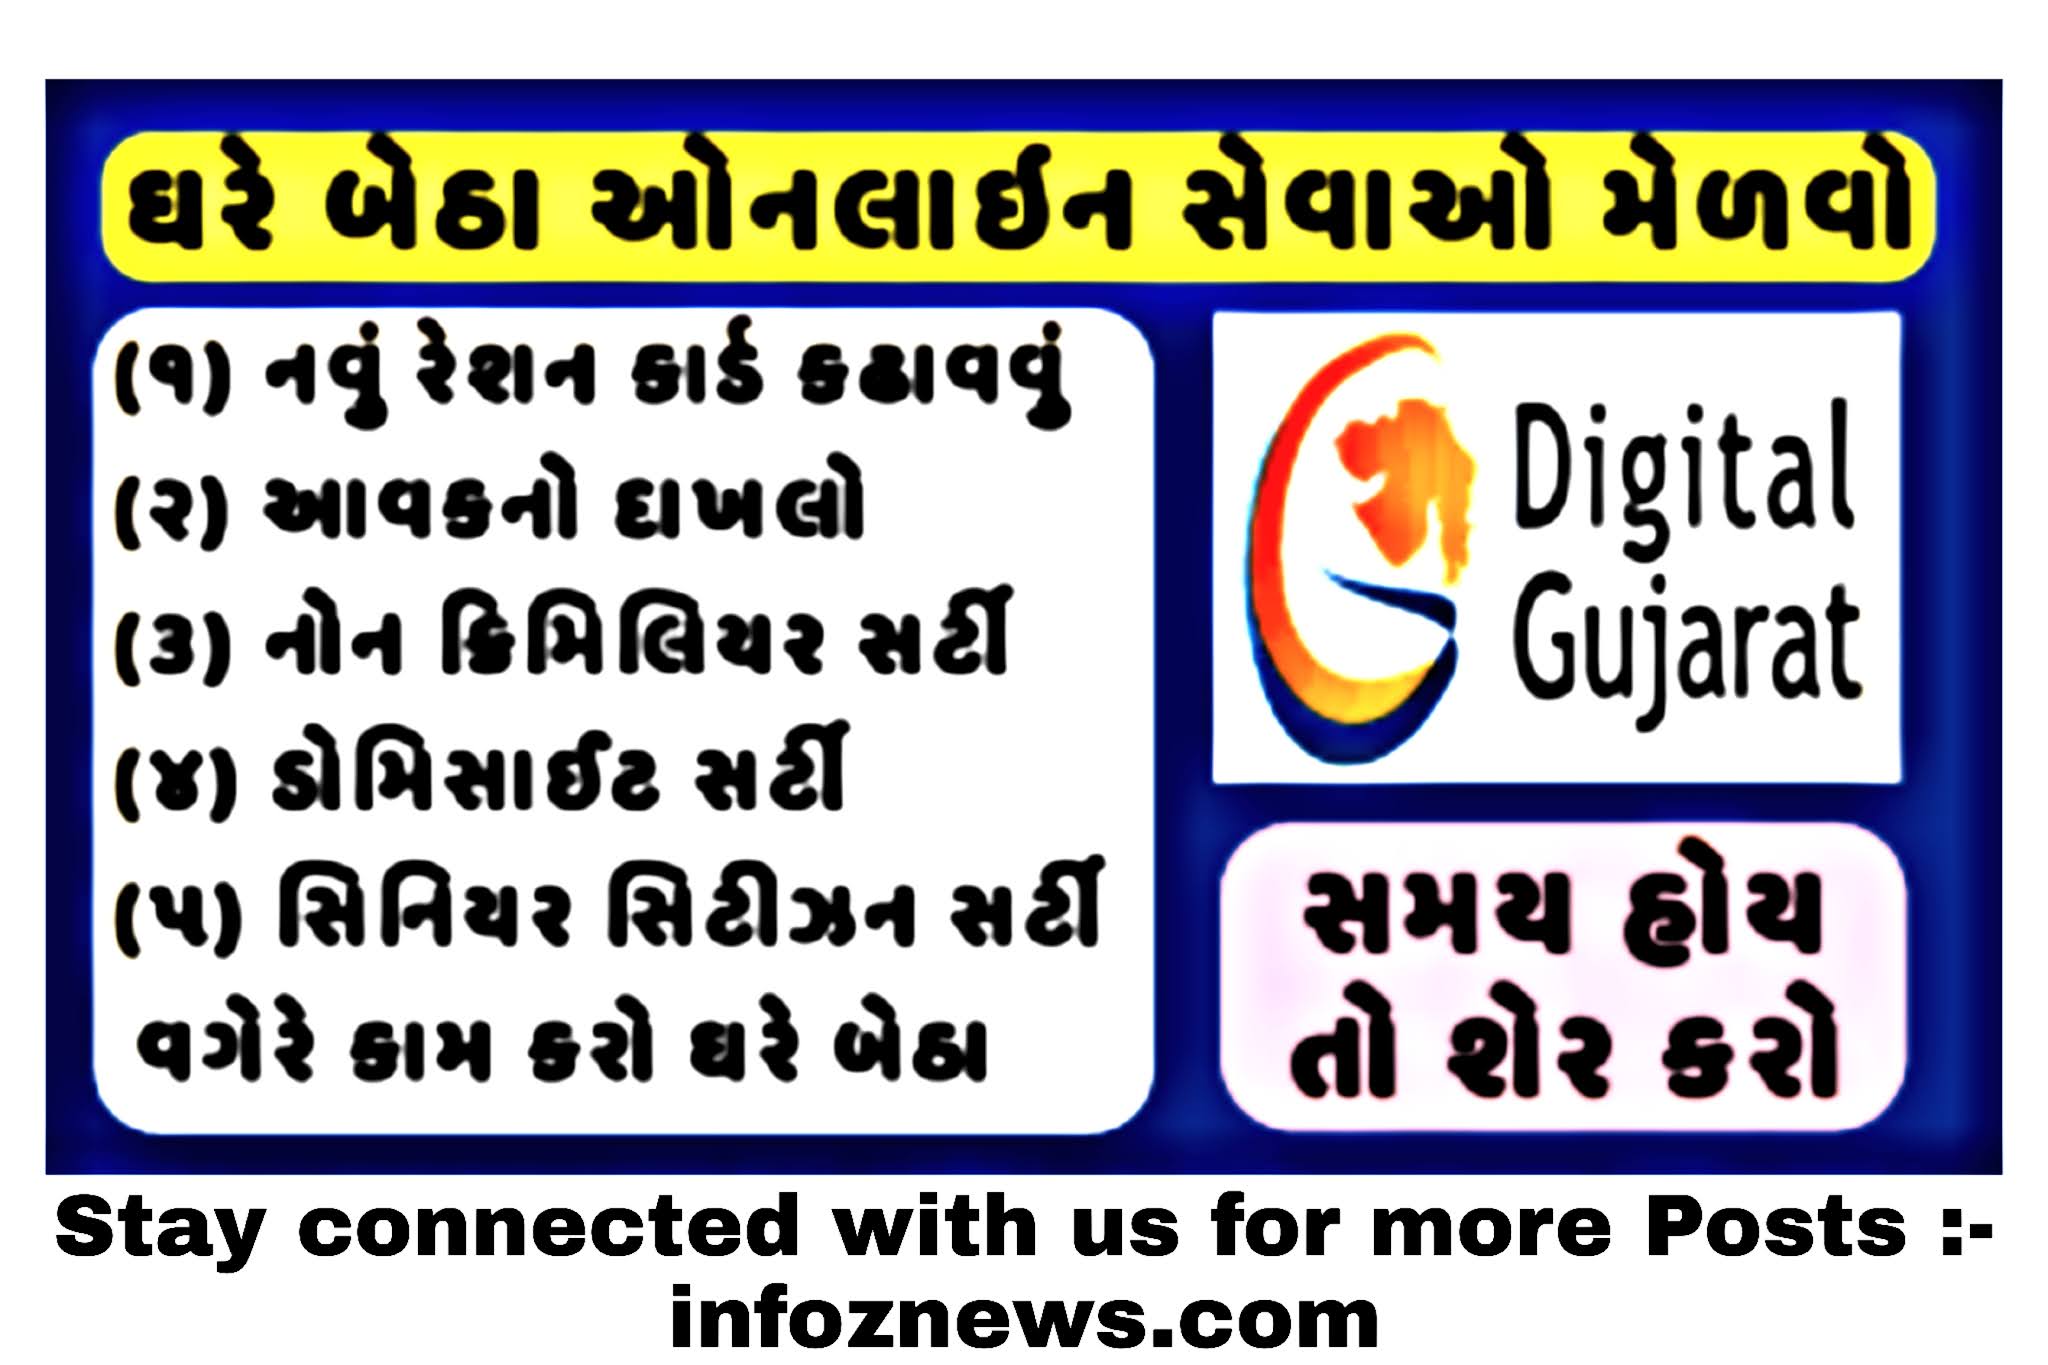 Digital Gujarat Login,Digital Gujarat Lockdown Pass,Digital Gujarat Registration,Digital Gujarat marriage permission